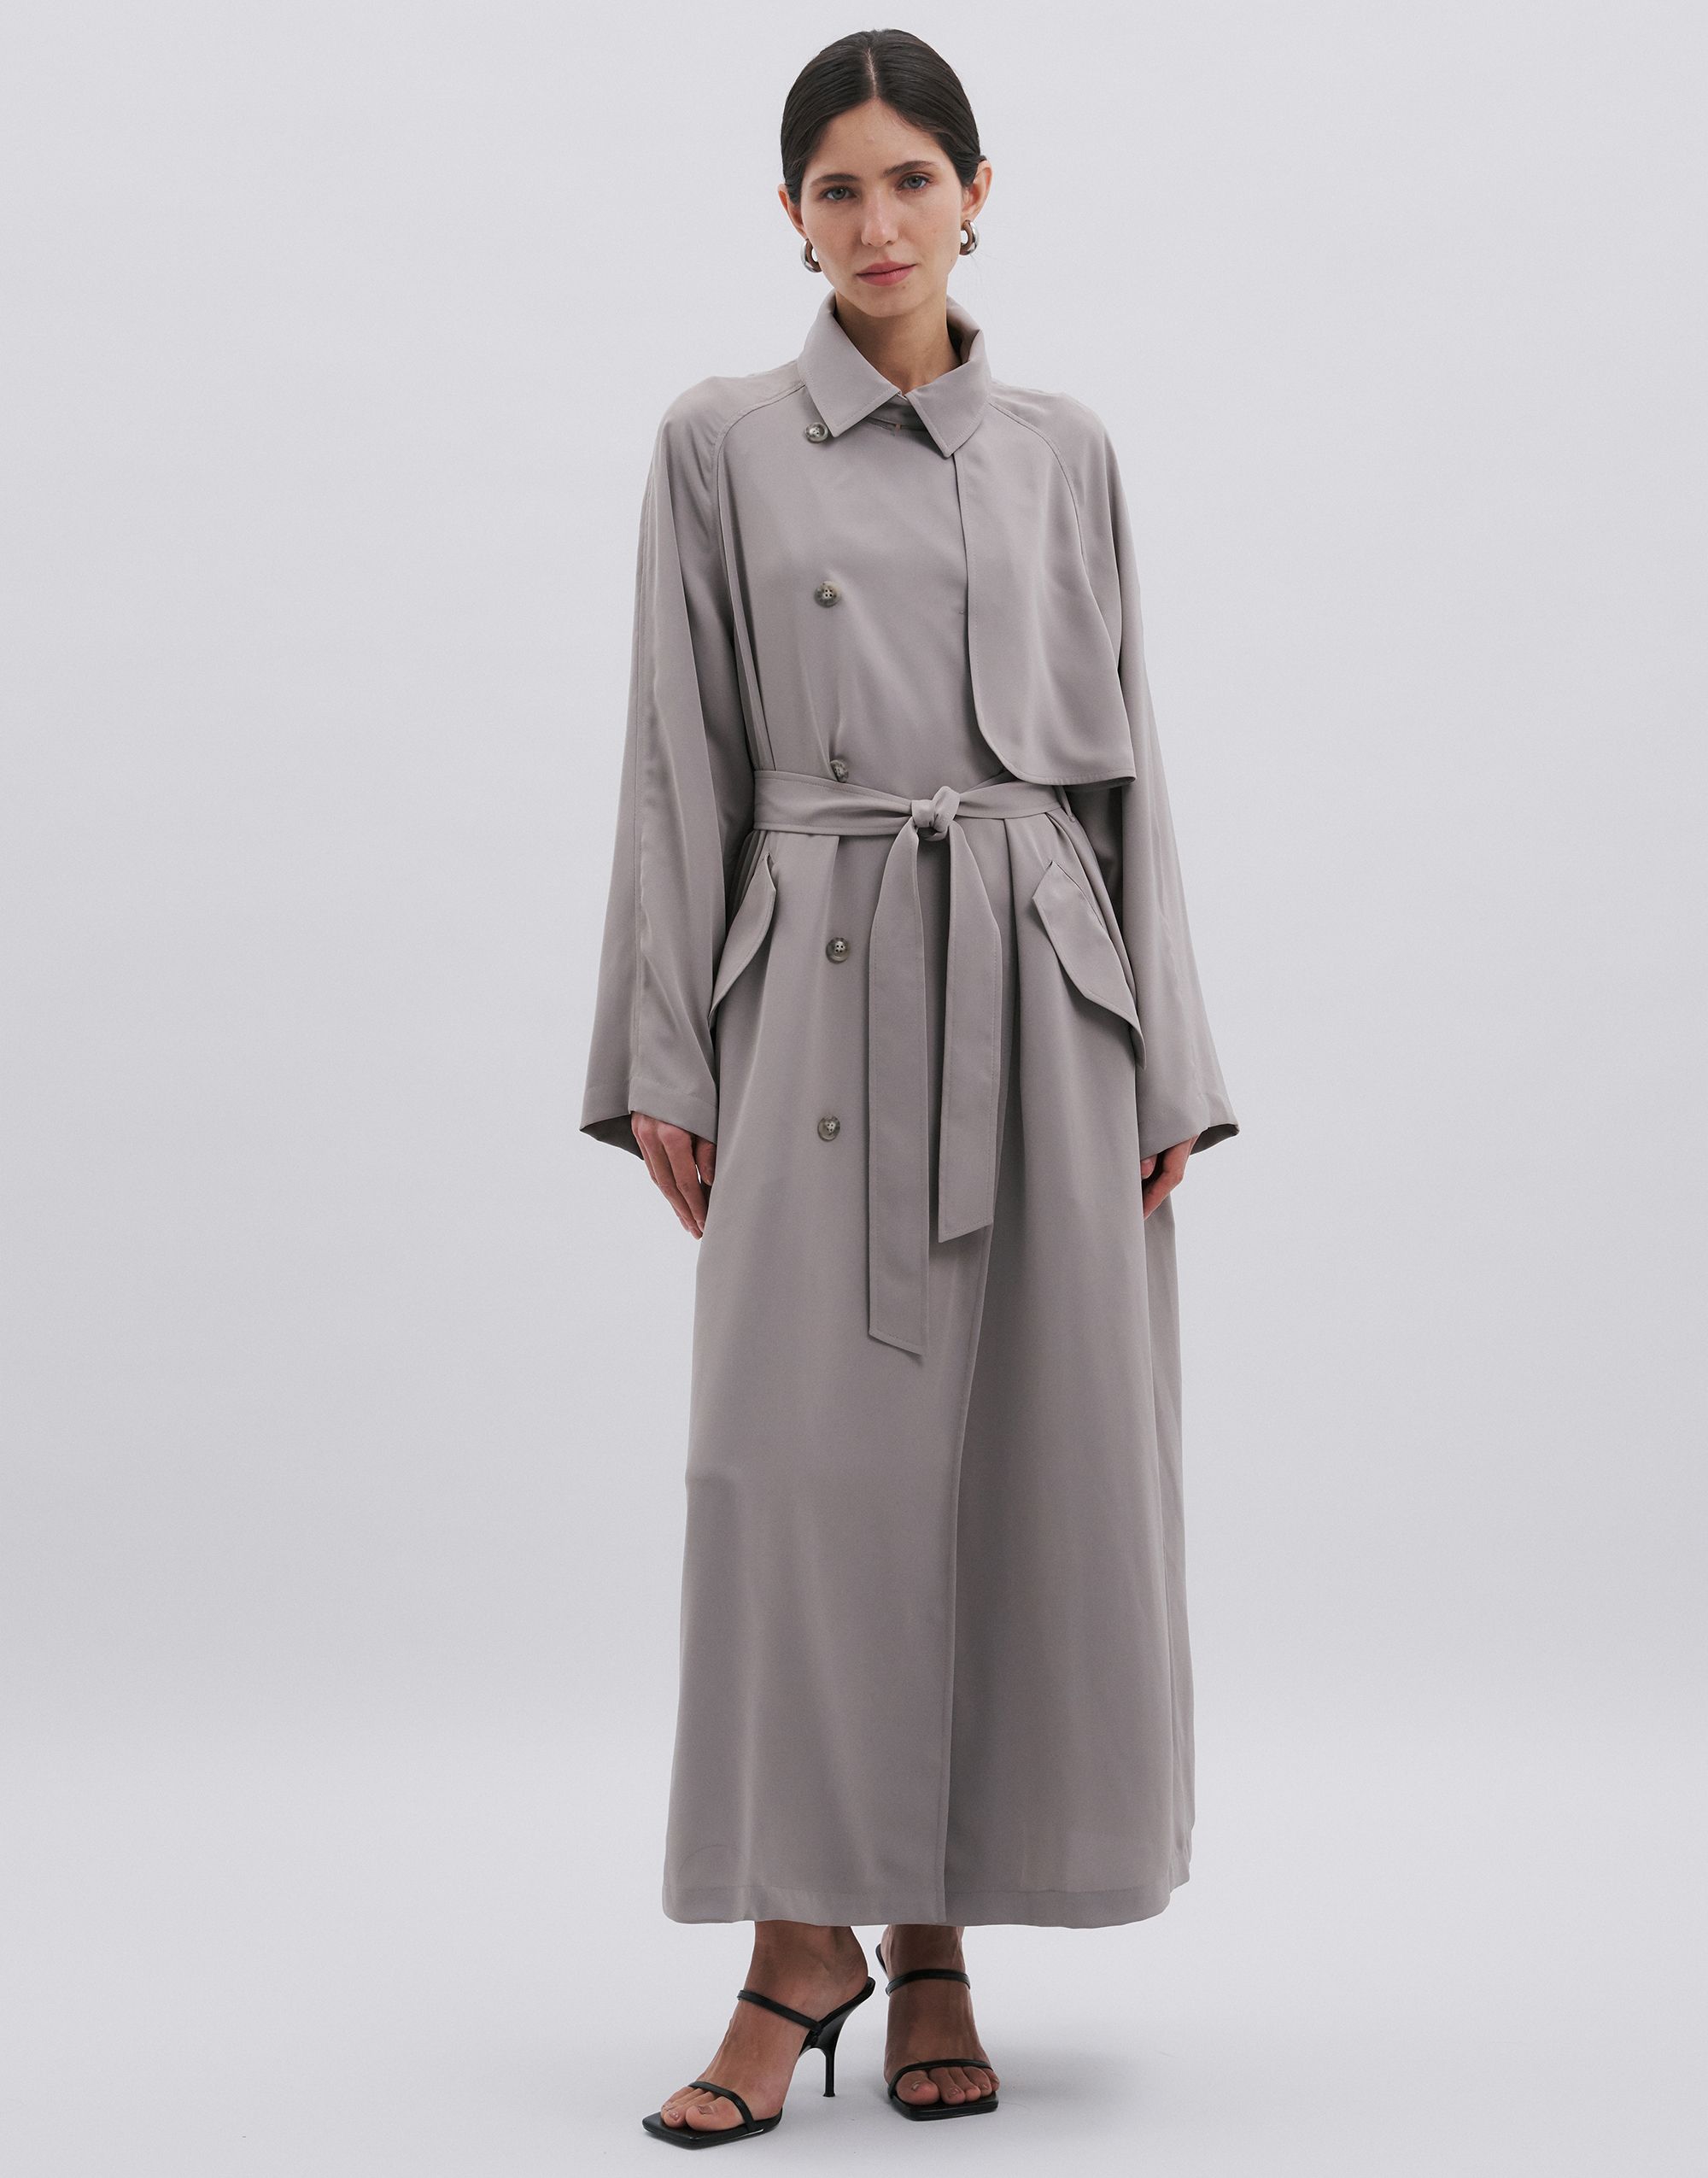 Duster coat, pattern №1126